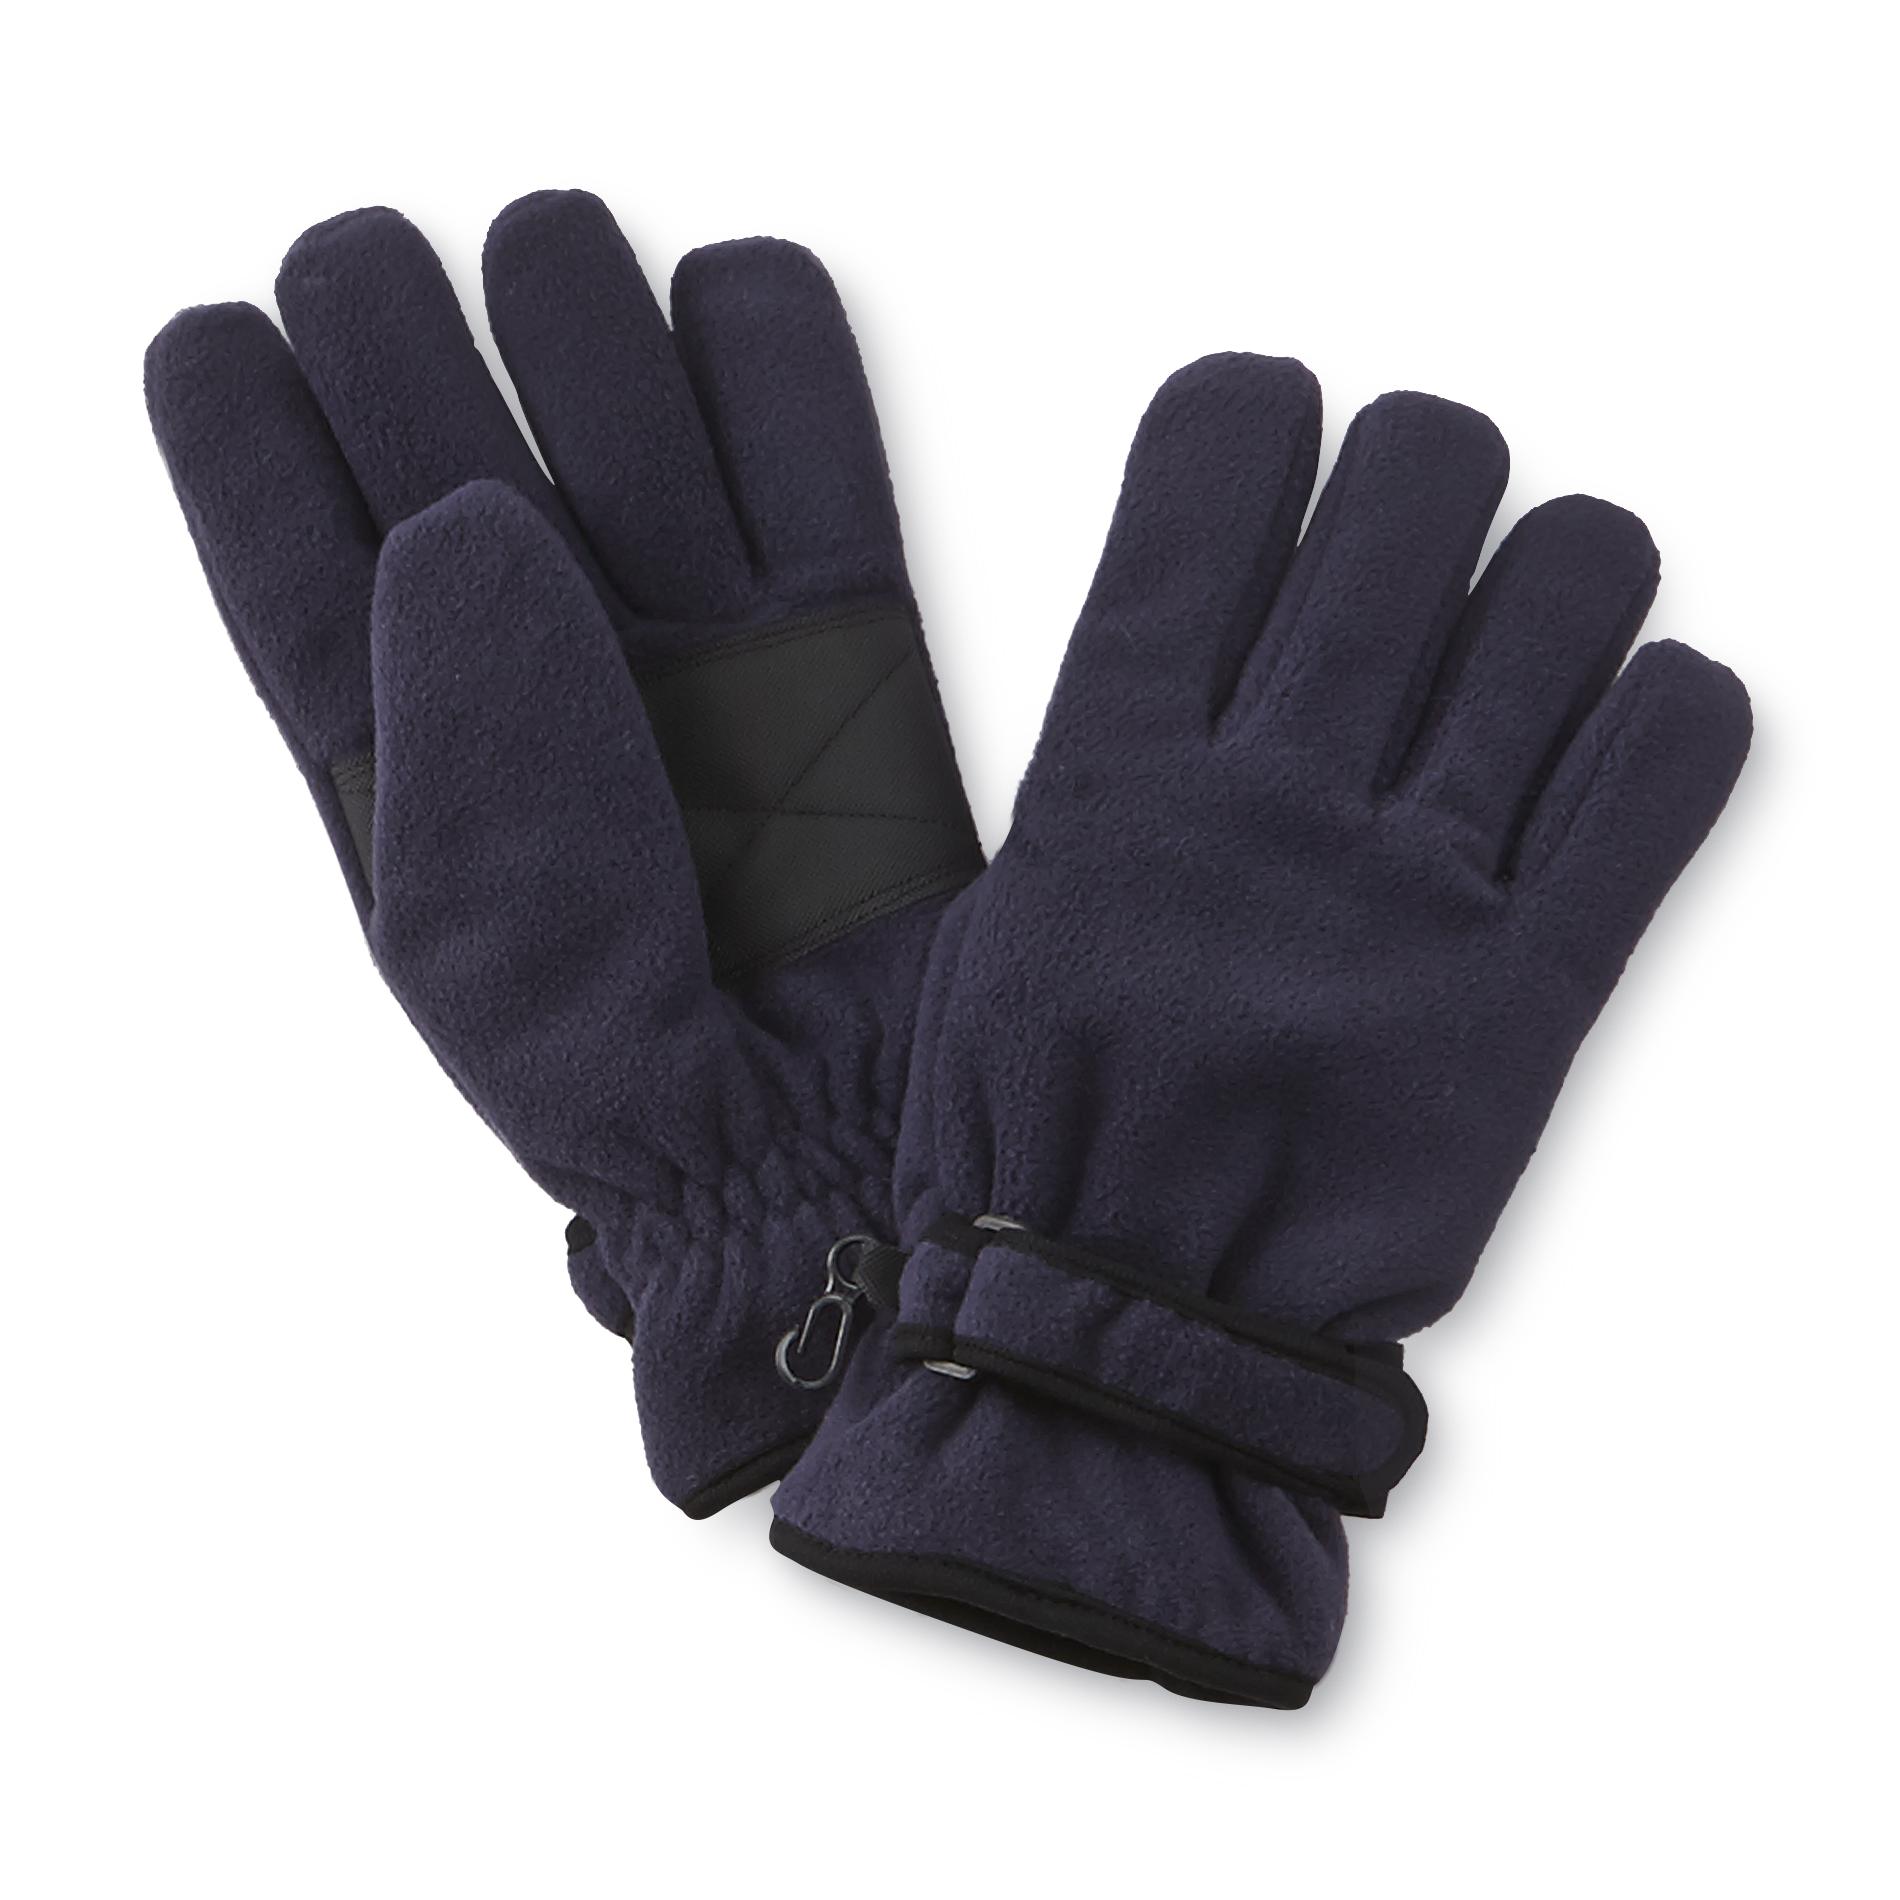 NordicTrack Men's Insulated Fleece Gloves